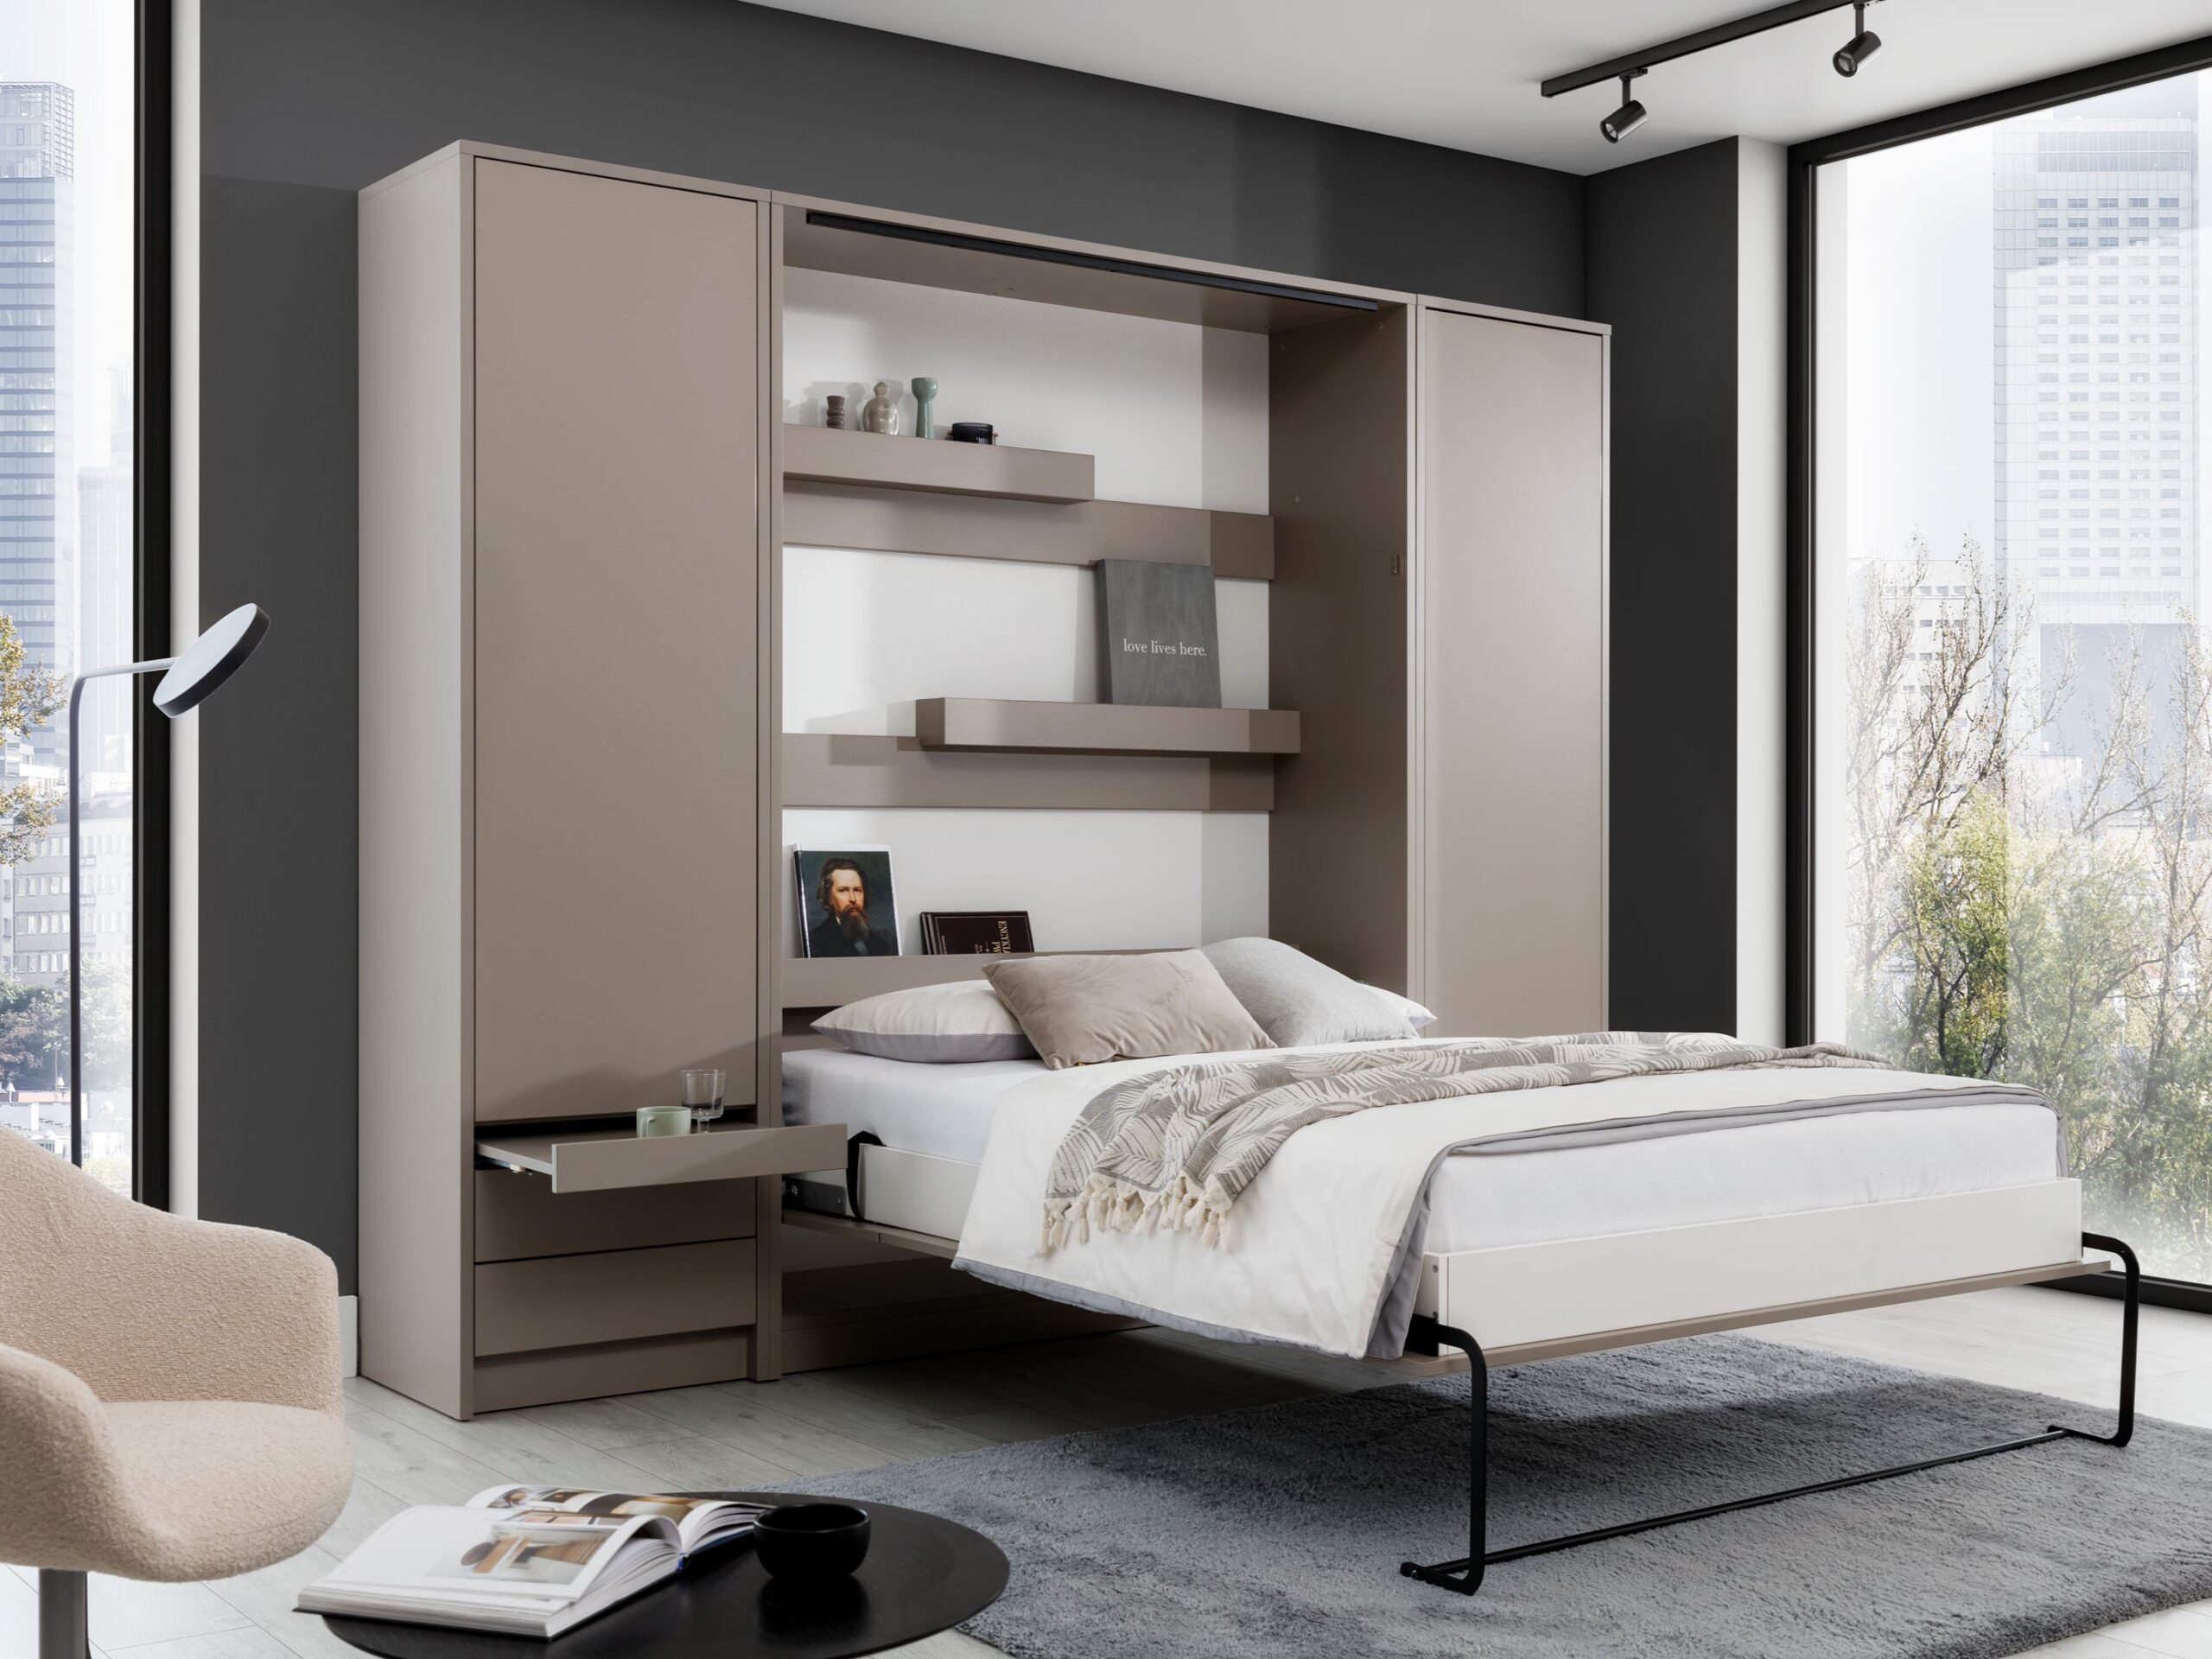 Łóżko w szafie – półkotapczan. Idealne rozwiązanie do małych mieszkań.